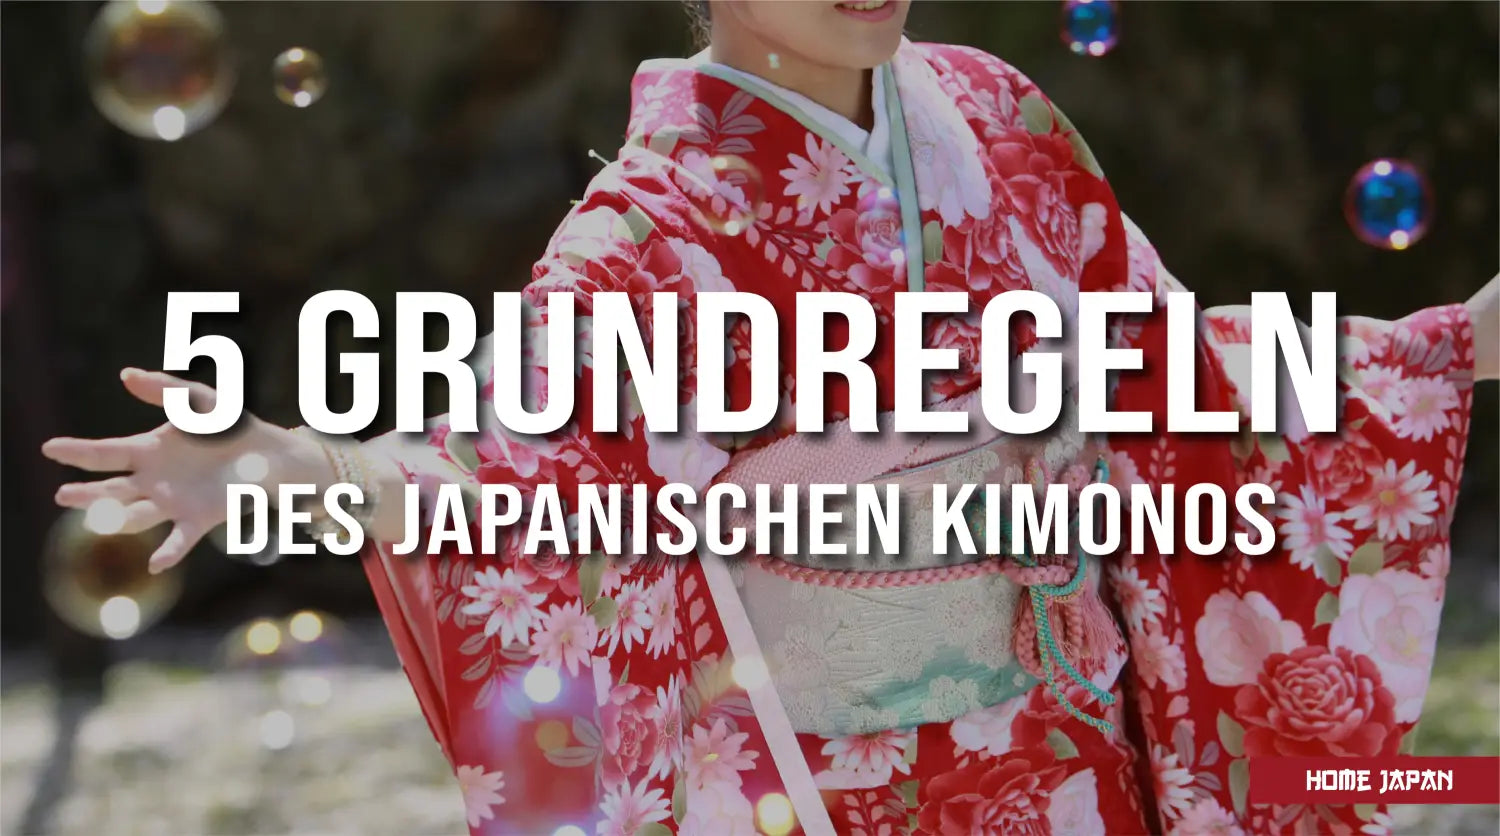 Regeln für japanische Kimonos